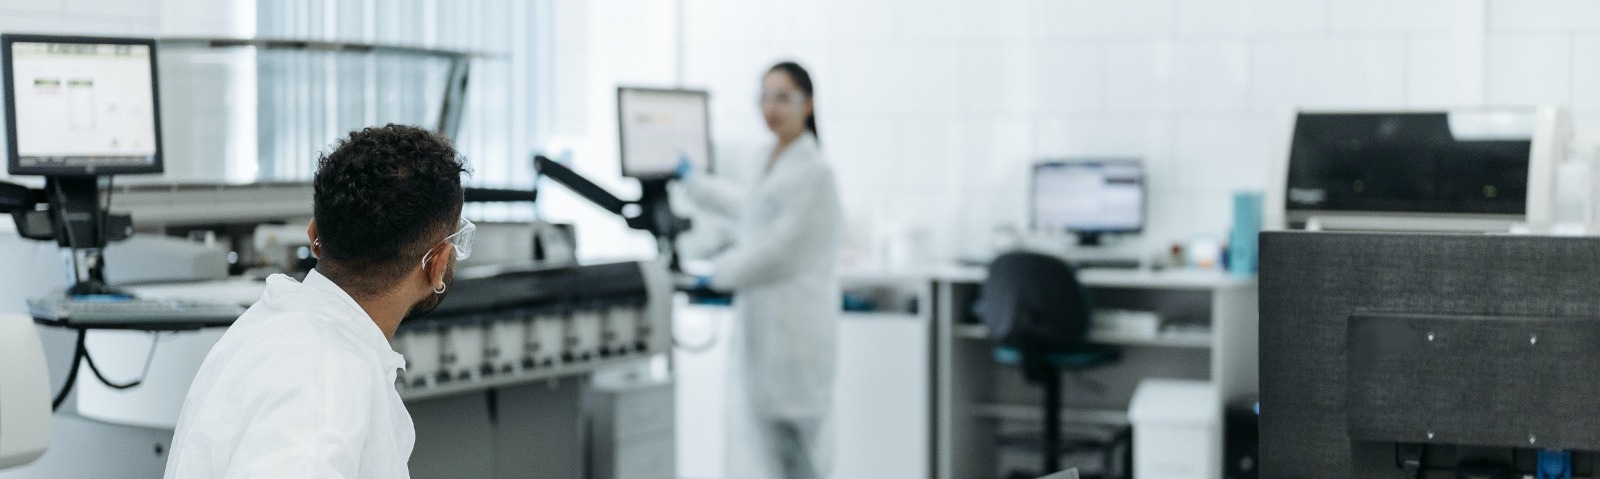 Biopsia capilar Técnicos de laboratorio